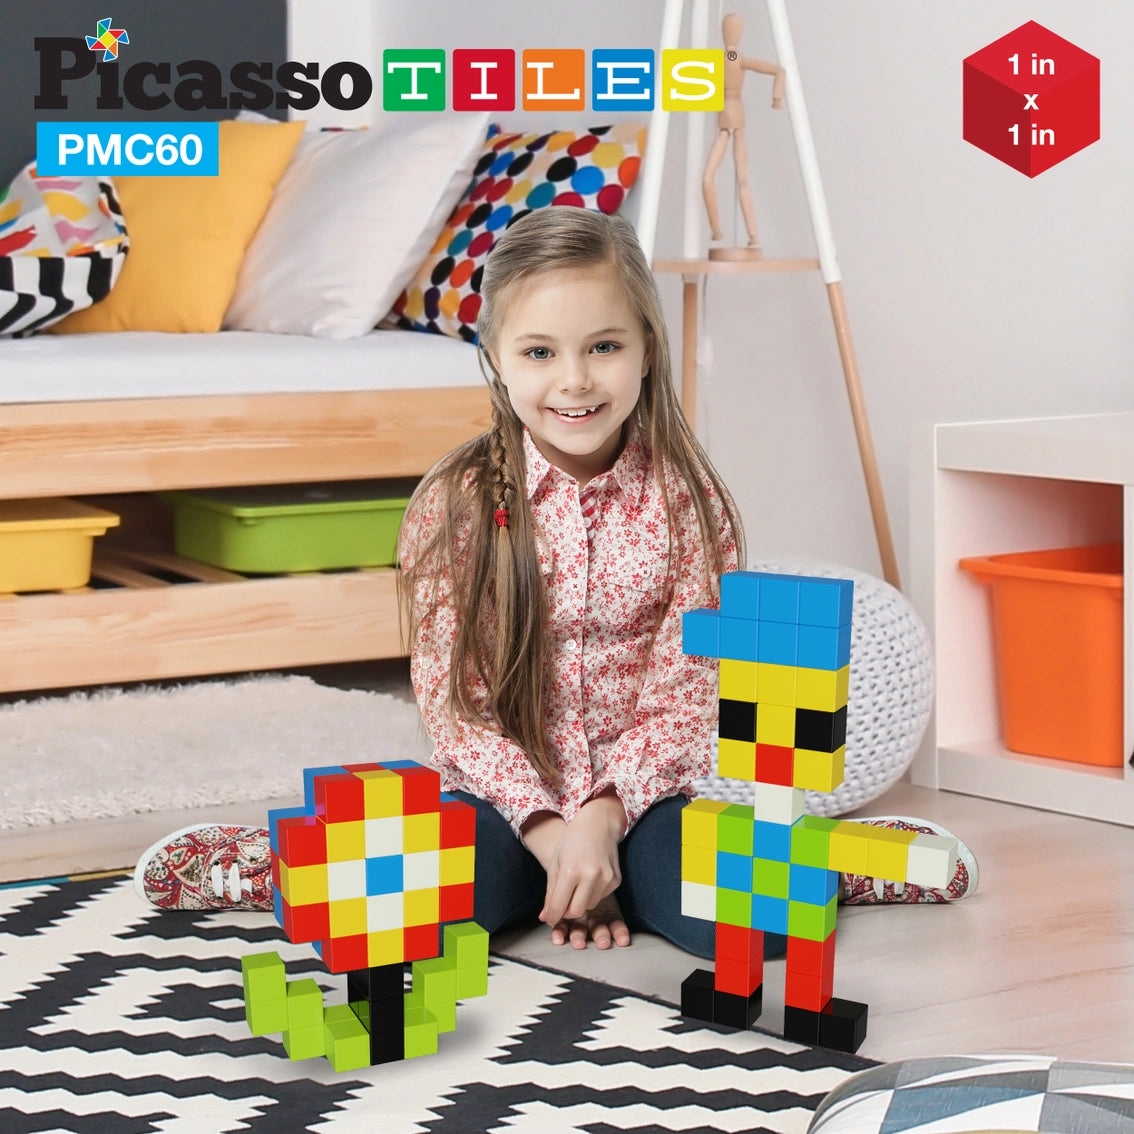 Picasso 60 Piece Magnetic Puzzle Cubes